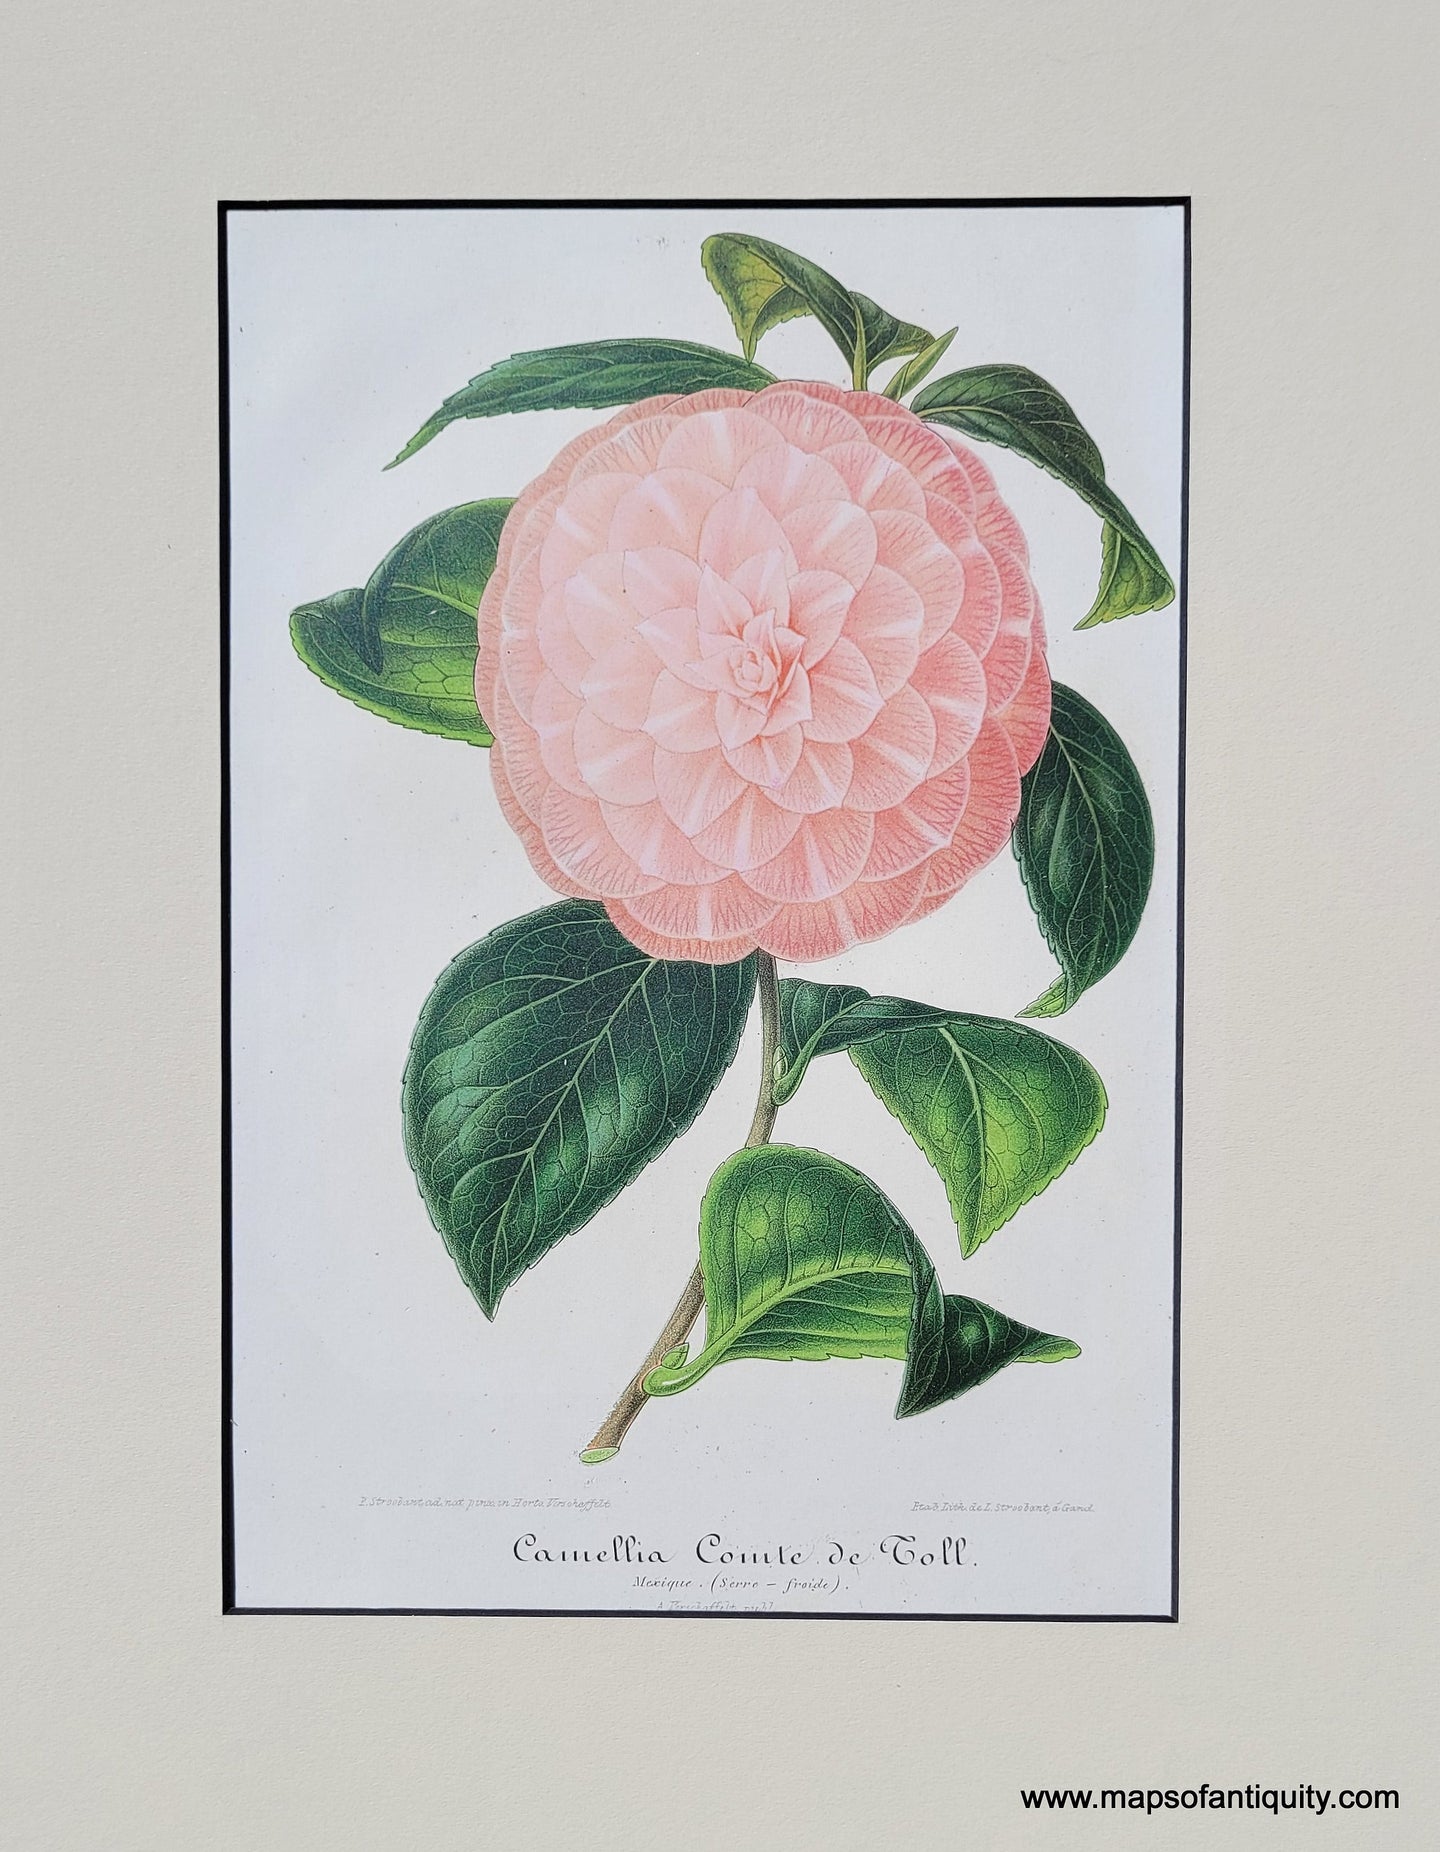 Genuine-Antique-Print-Camellia-Comt-de-Toll-1870-Ambroise-Verschaffelt-lIllustration-Horticole-Maps-Of-Antiquity